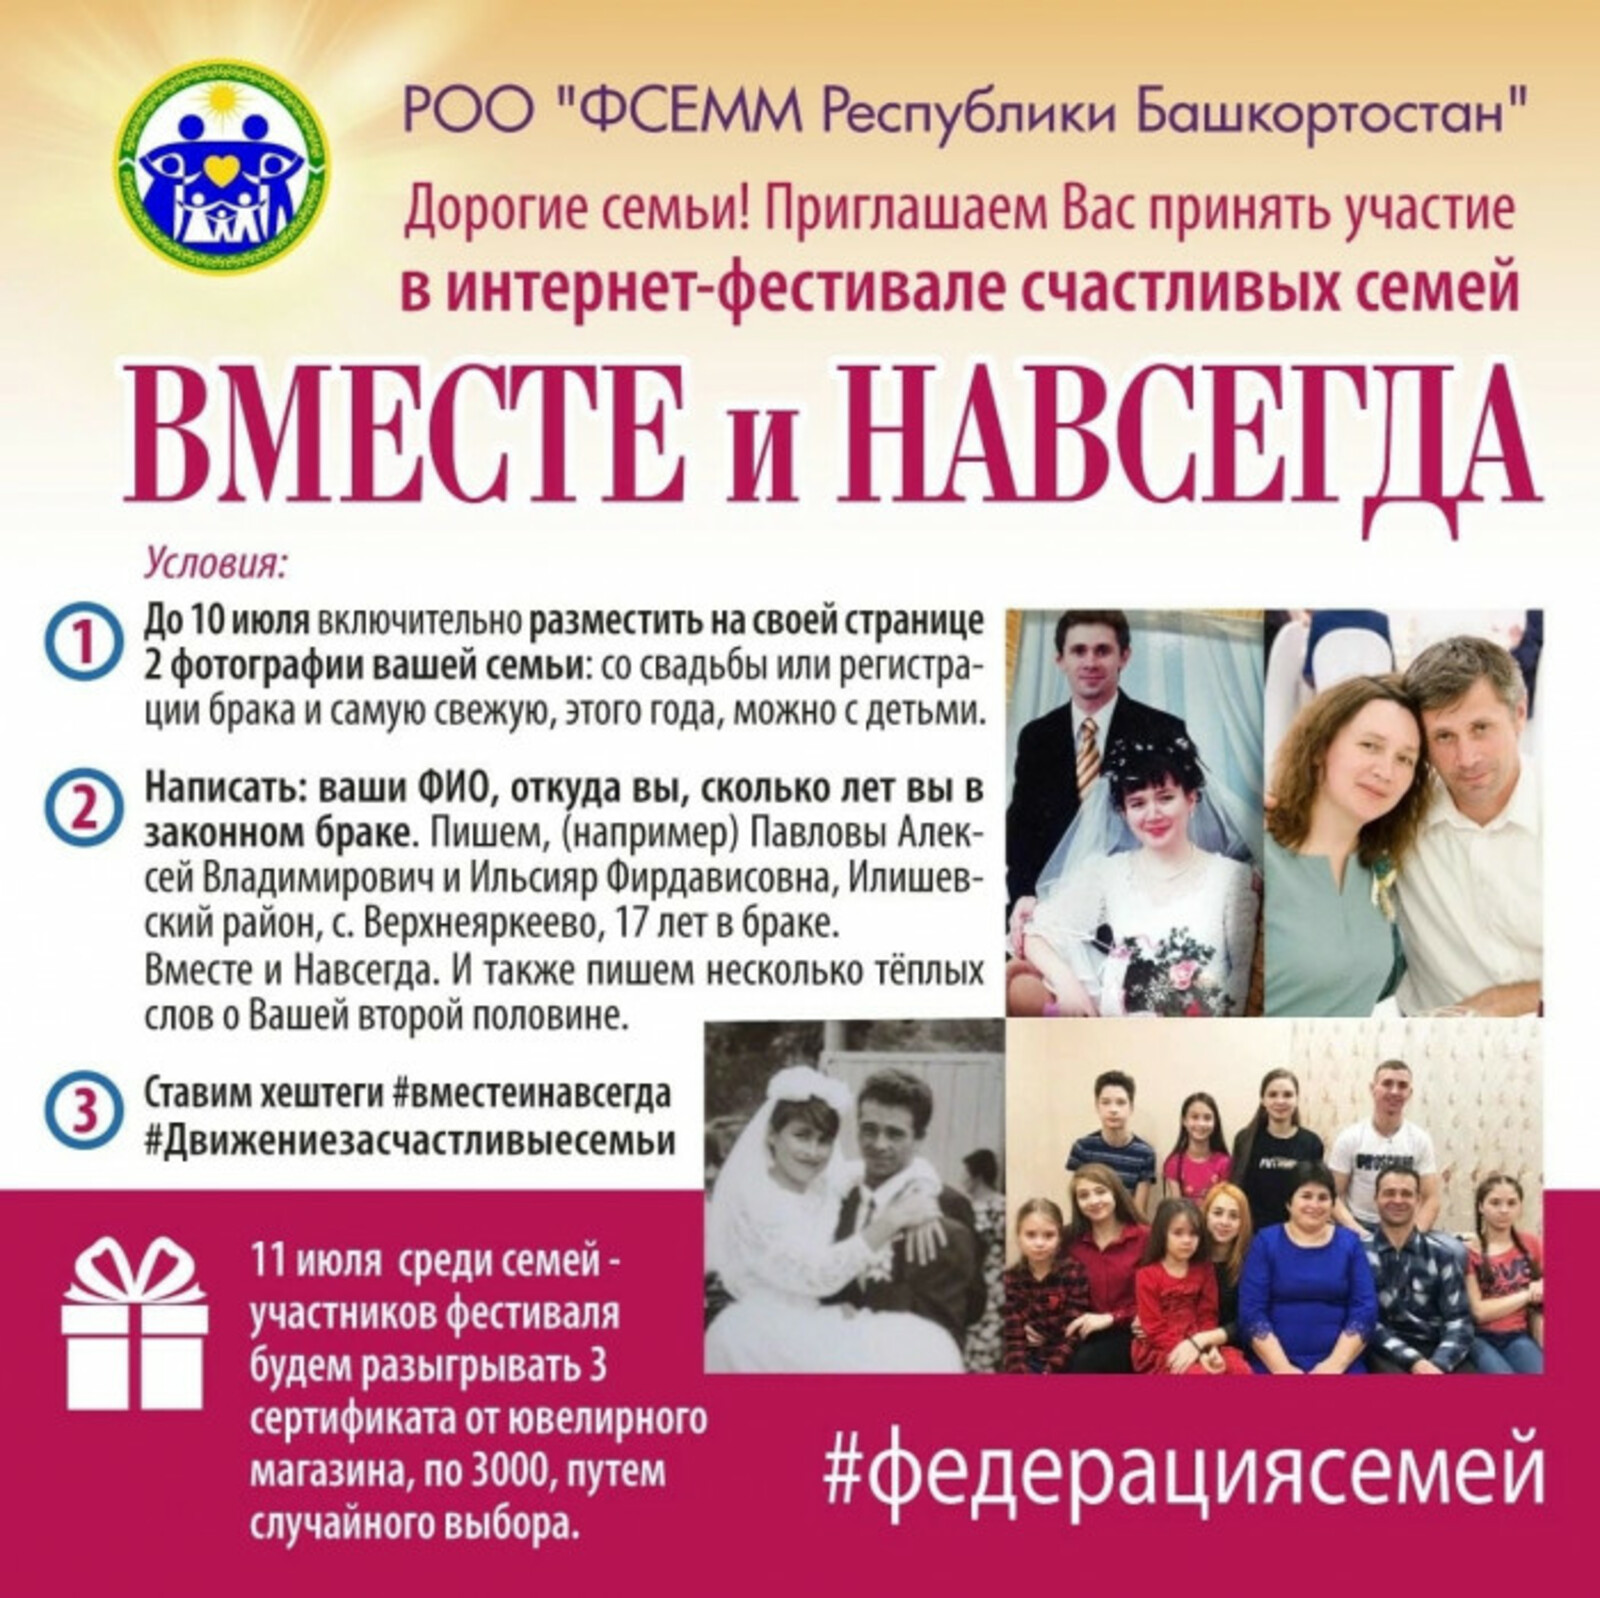 Федерация семей Республики Башкортостан проводит интернет-фестиваль счастливых семей «Вместе и навсегда»